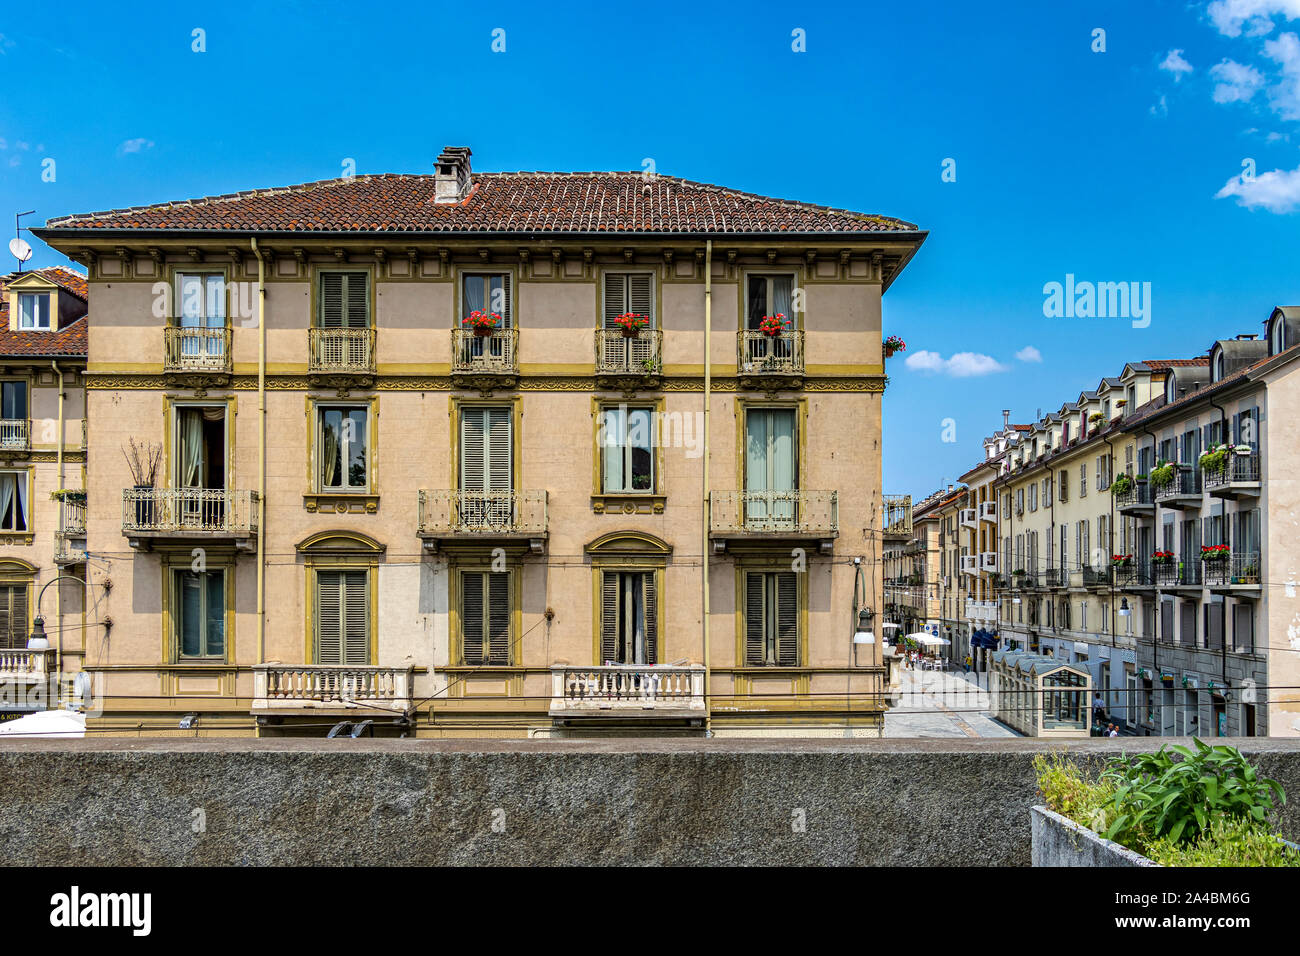 Blocco di appartamenti con persiane di legno e balconi in pietra a piazza Gran Madre di Dio , Torino, Italia Foto Stock